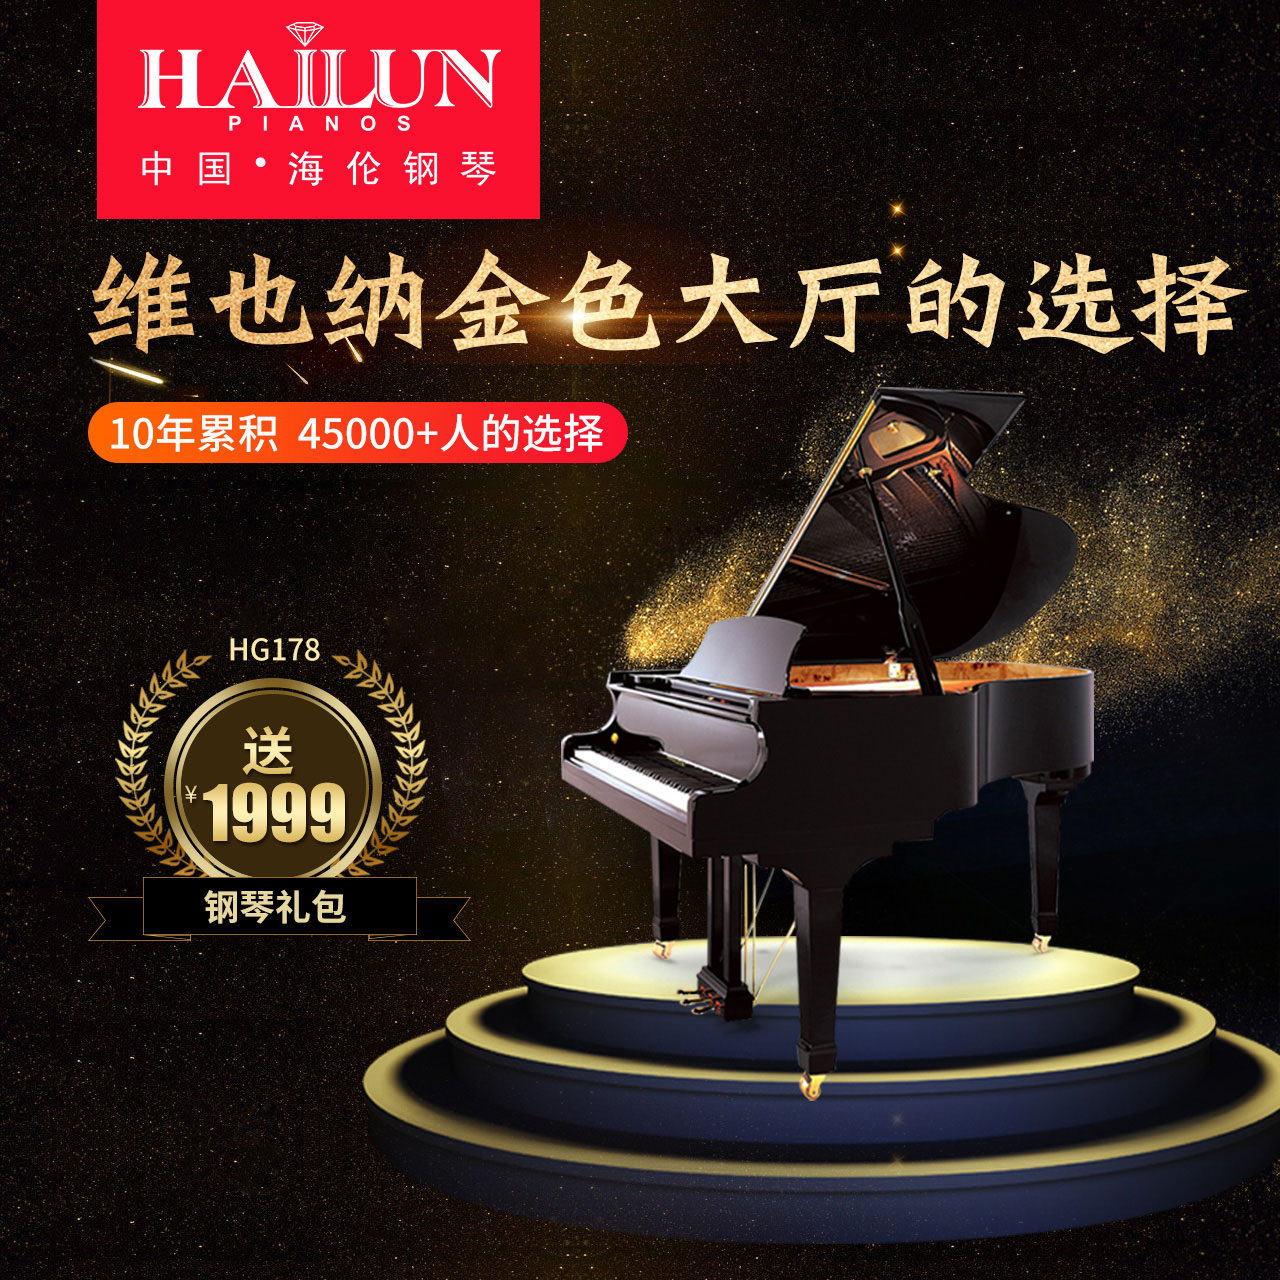 海伦钢琴官方旗舰店全新三角钢琴HG178 88键家用专业正品钢琴